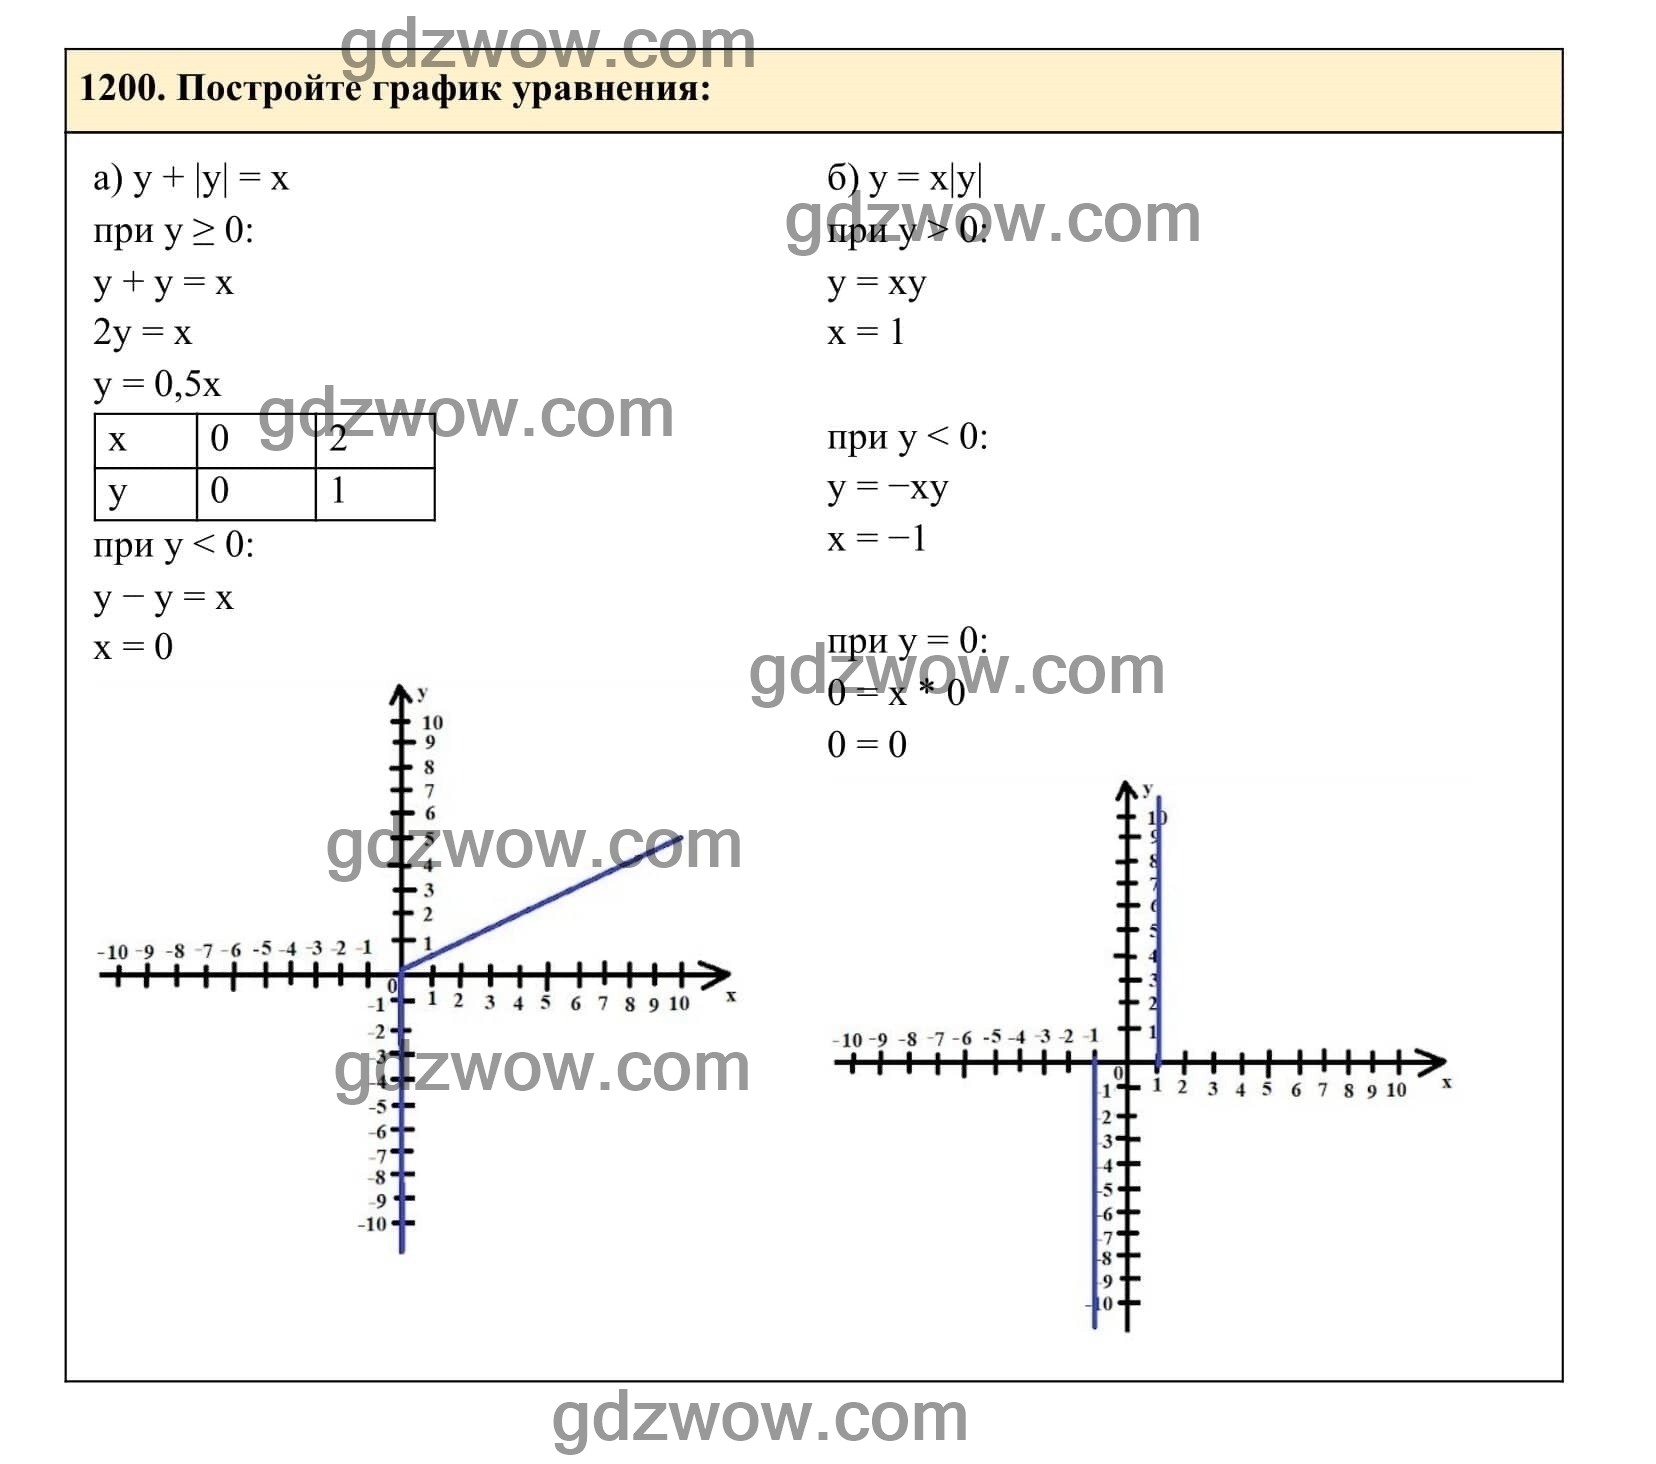 Упражнение 1200 - ГДЗ по Алгебре 7 класс Учебник Макарычев (решебник) - GDZwow